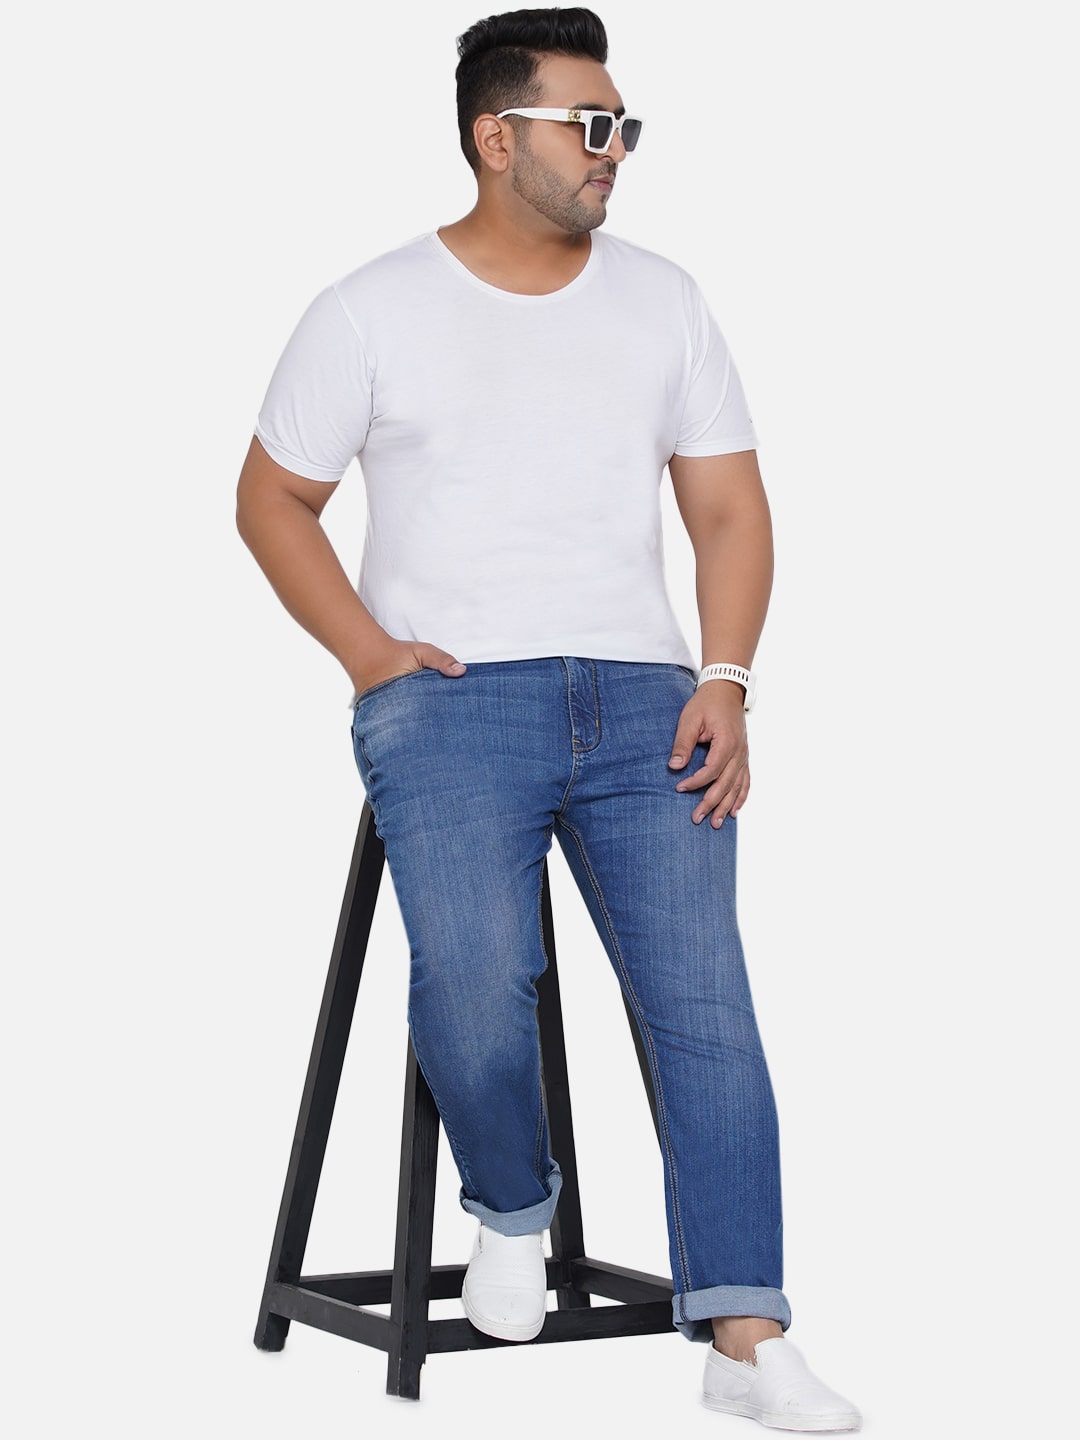 bottomwear/jeans/EJPJ25012/ejpj25012-1.jpg